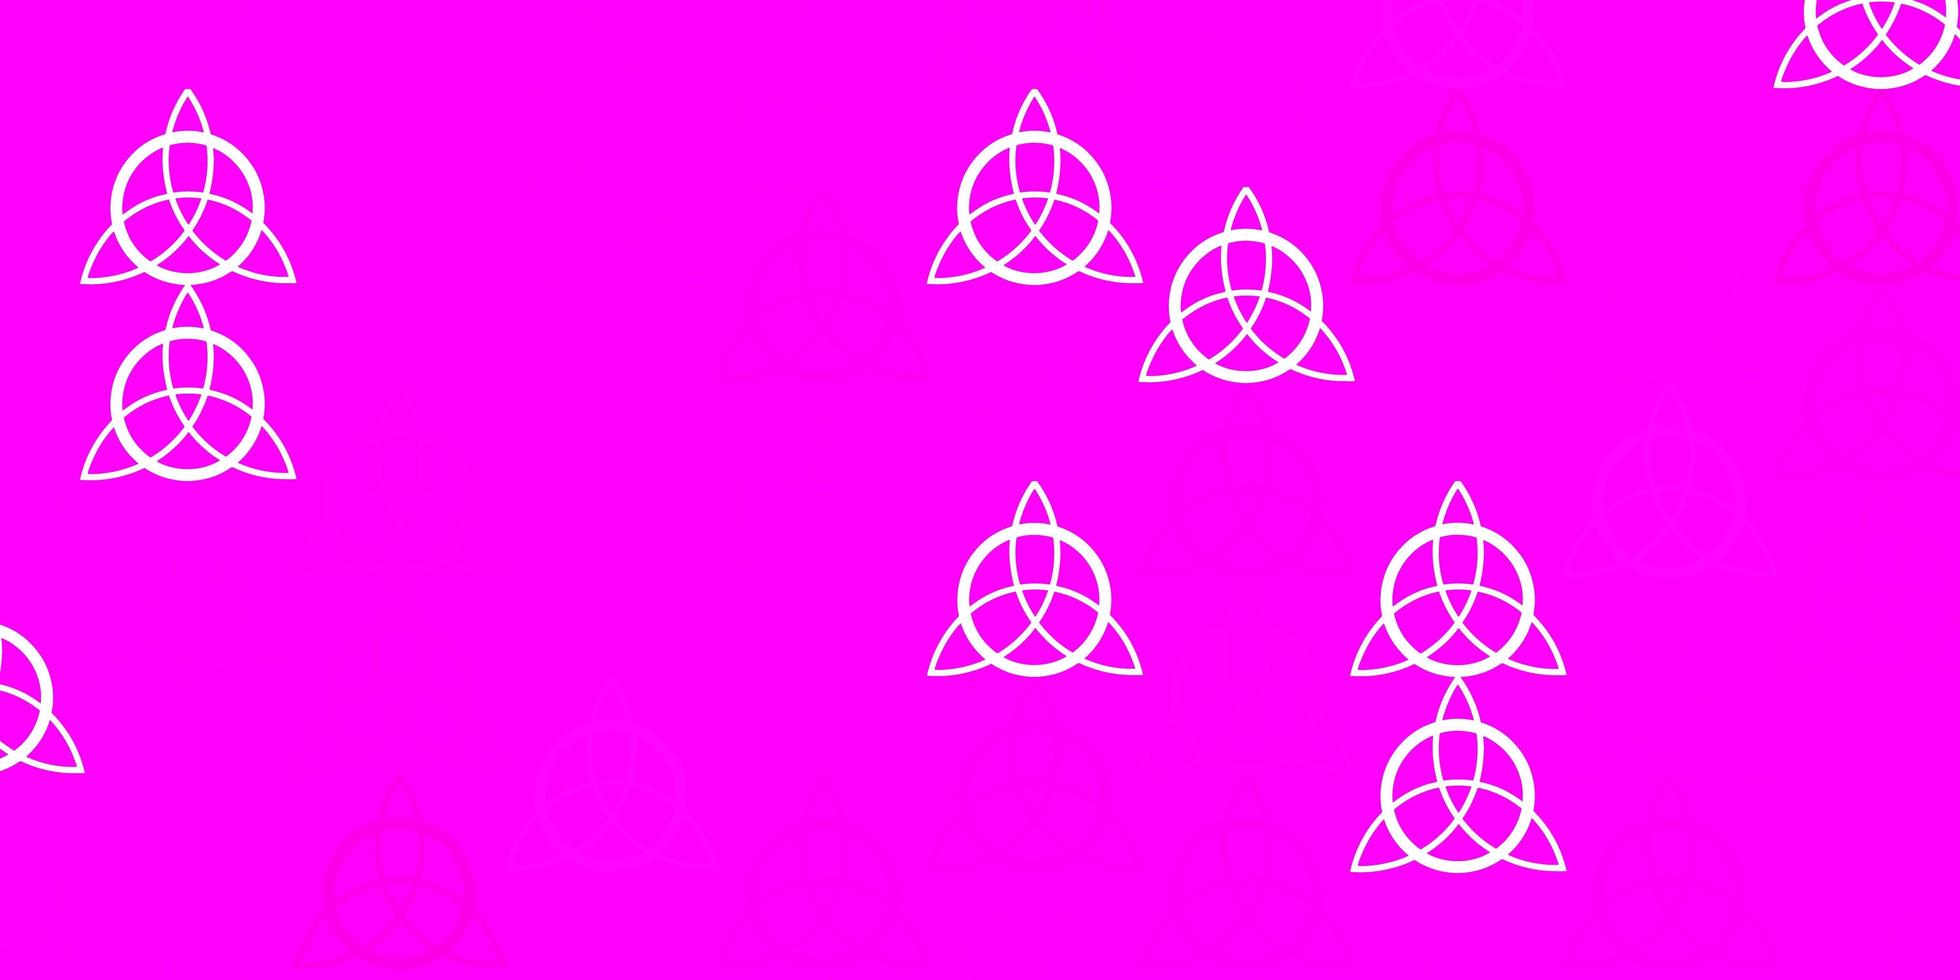 modelo de vetor rosa claro com sinais esotéricos.